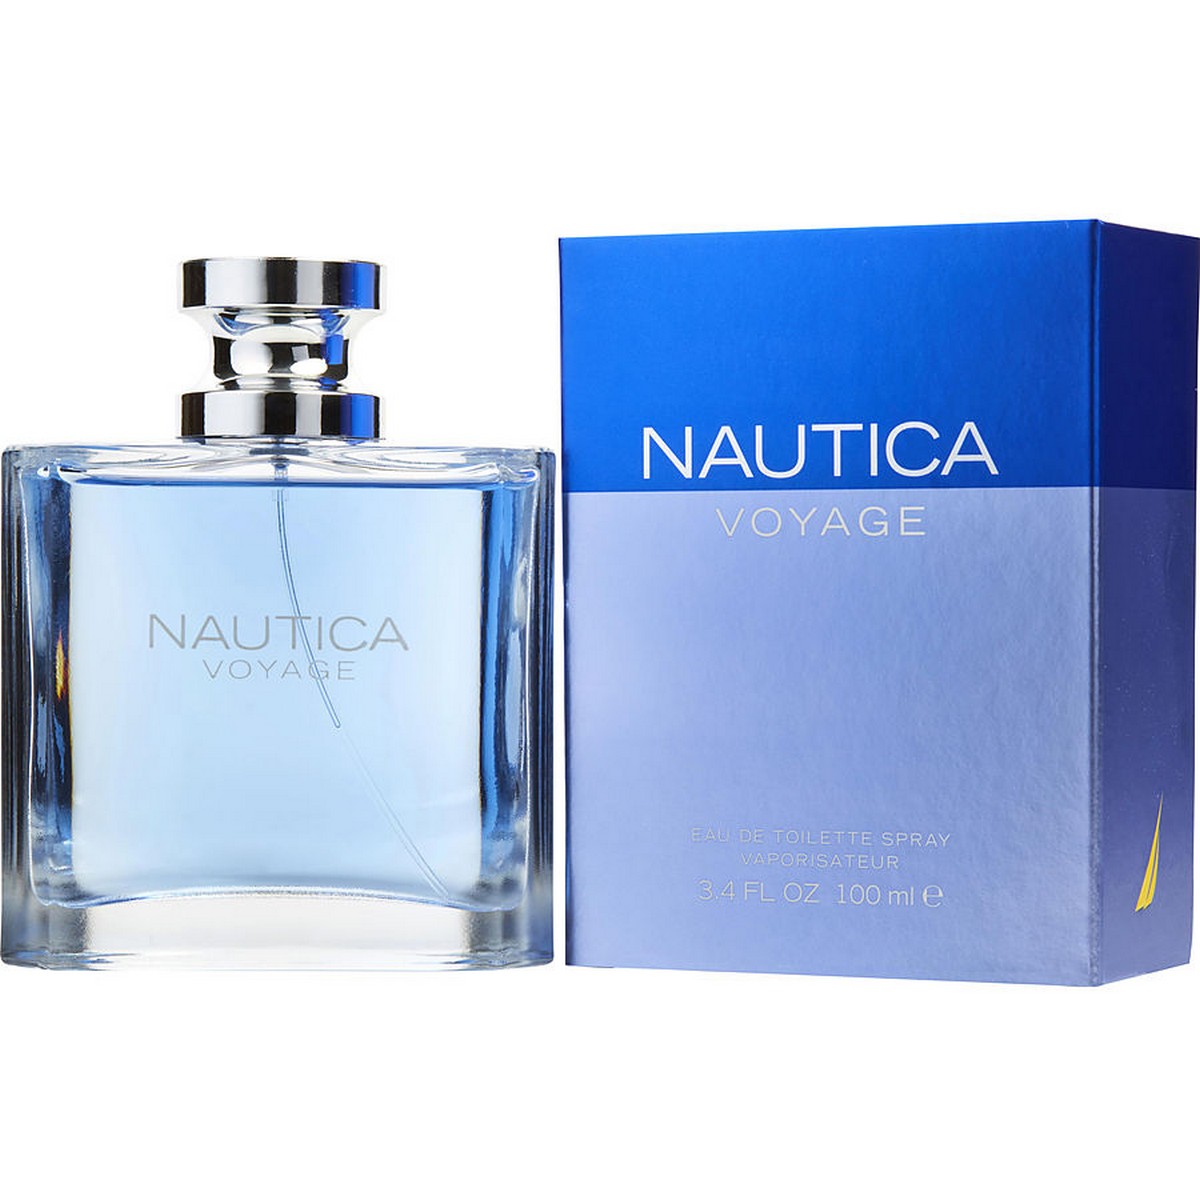 Nautica Voyage Perfume For Men - 100ml